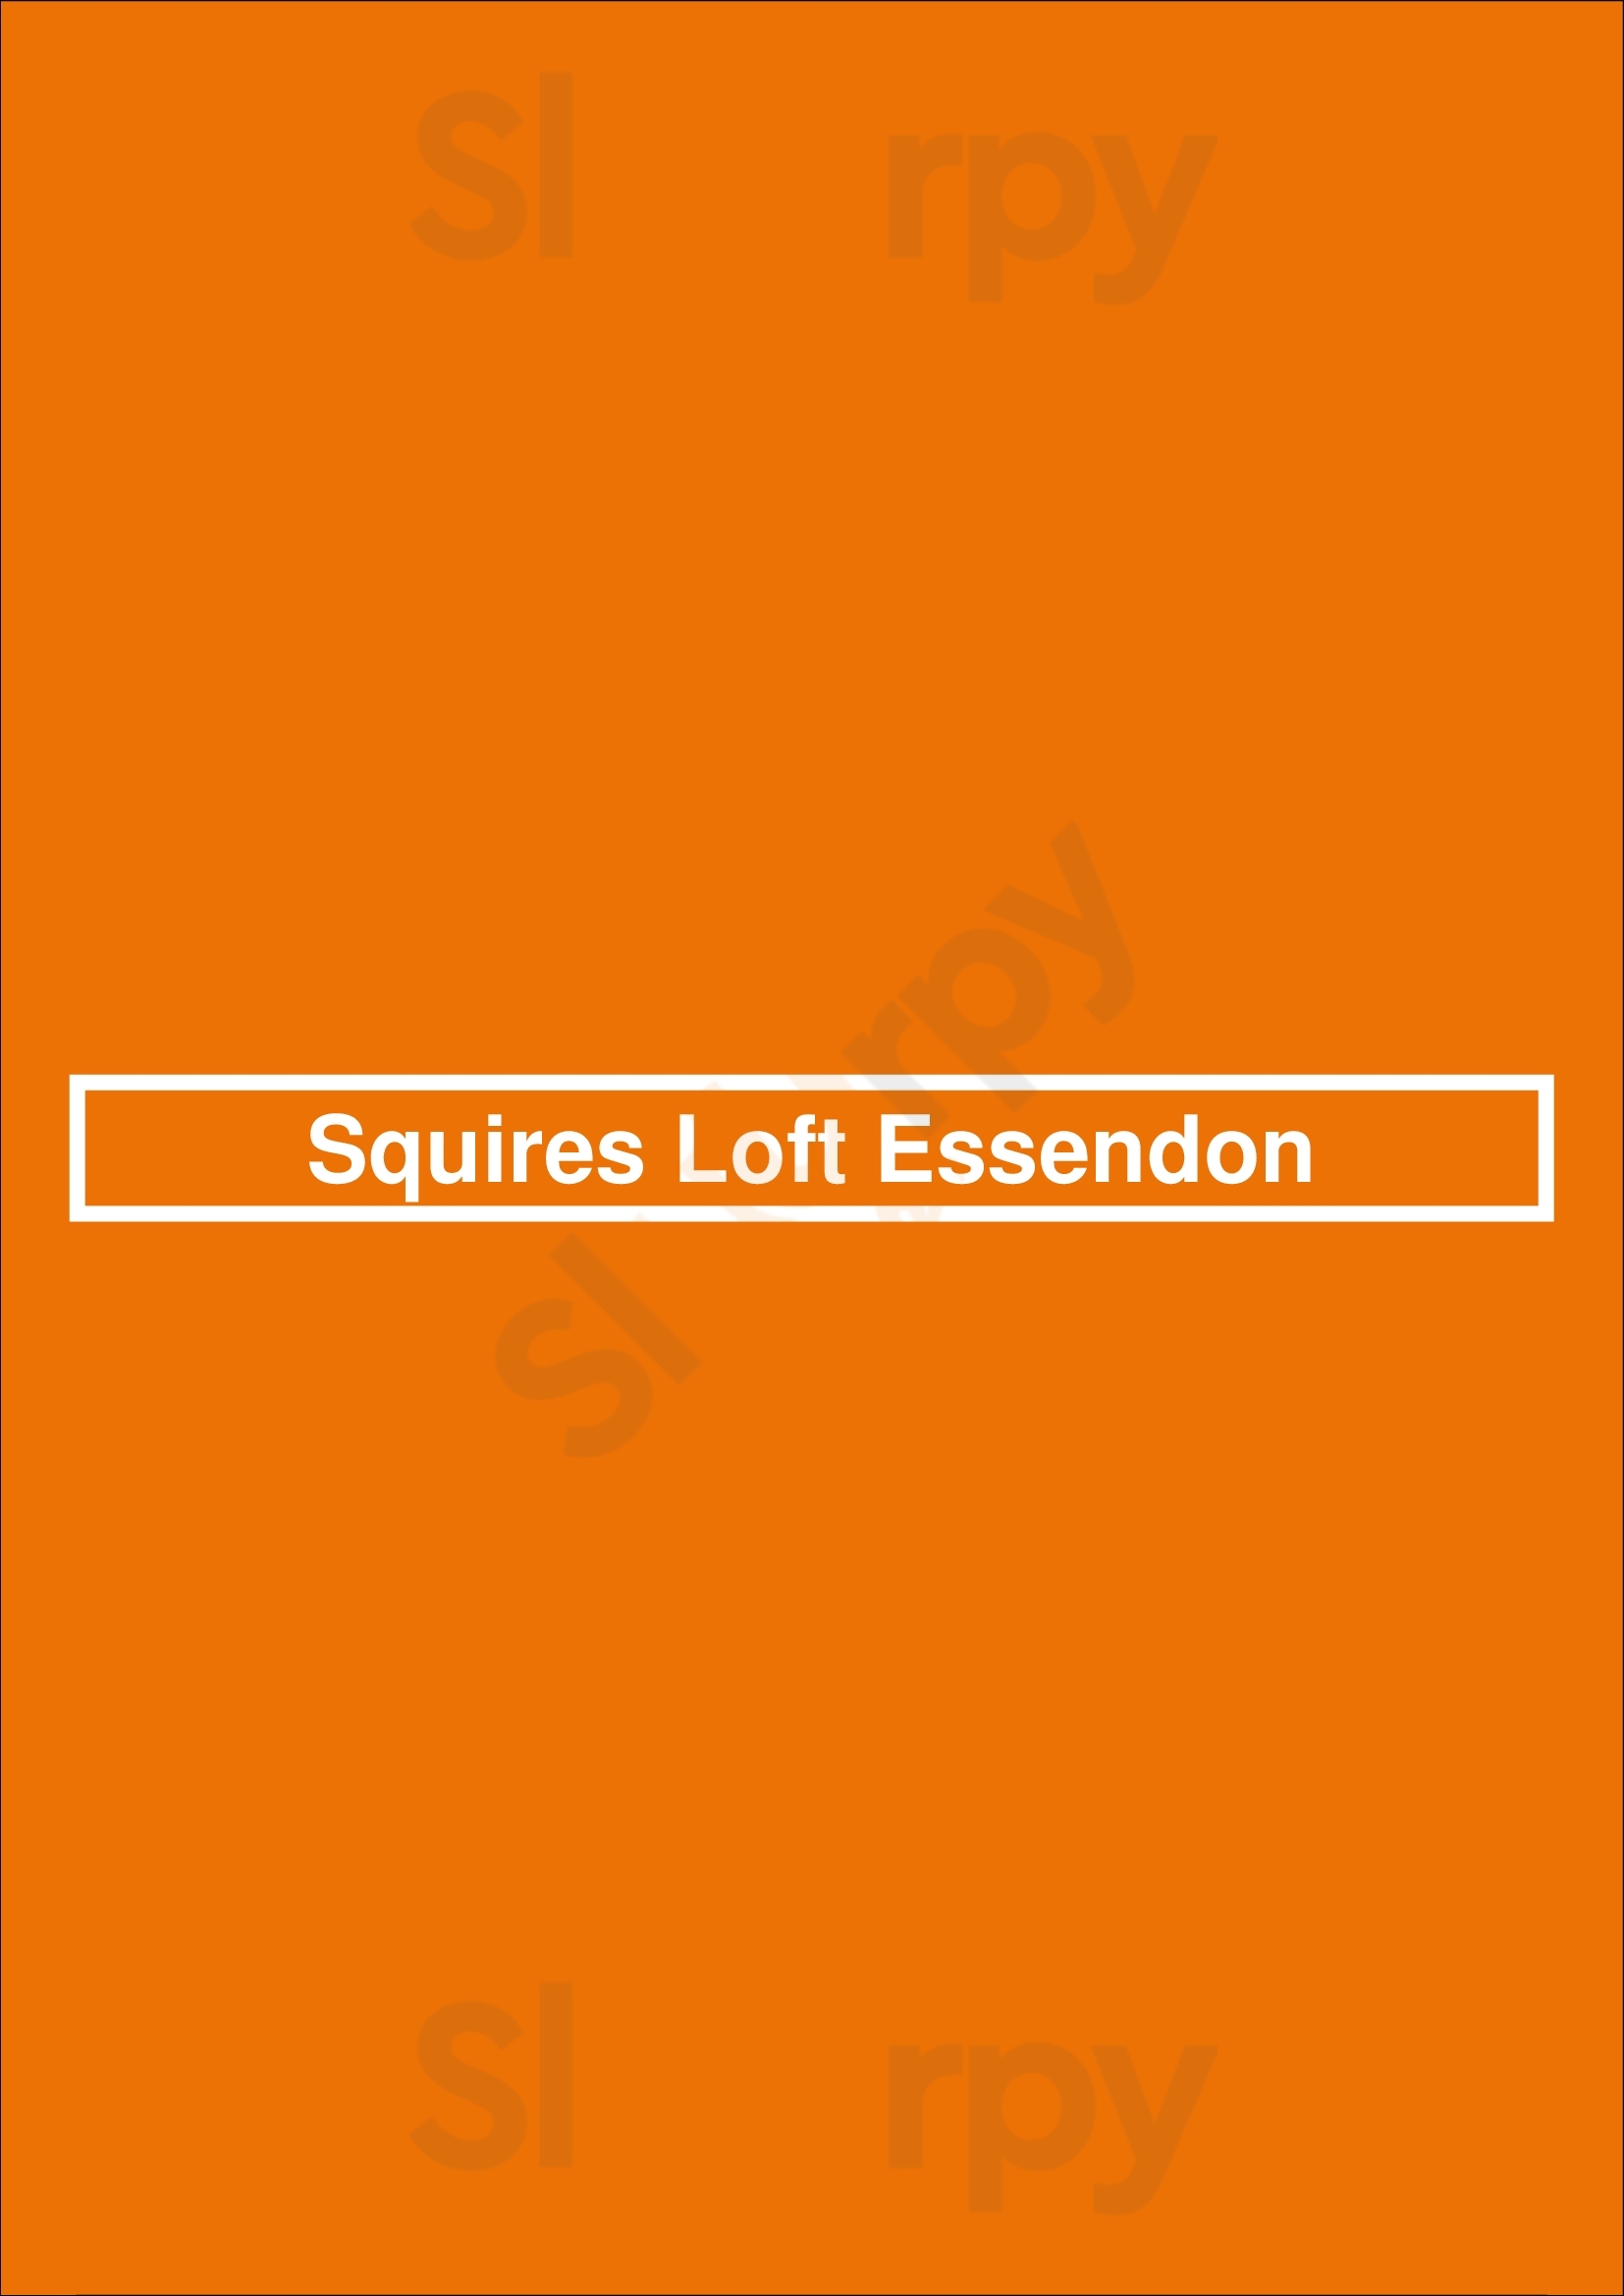 Squires Loft Essendon Essendon Menu - 1